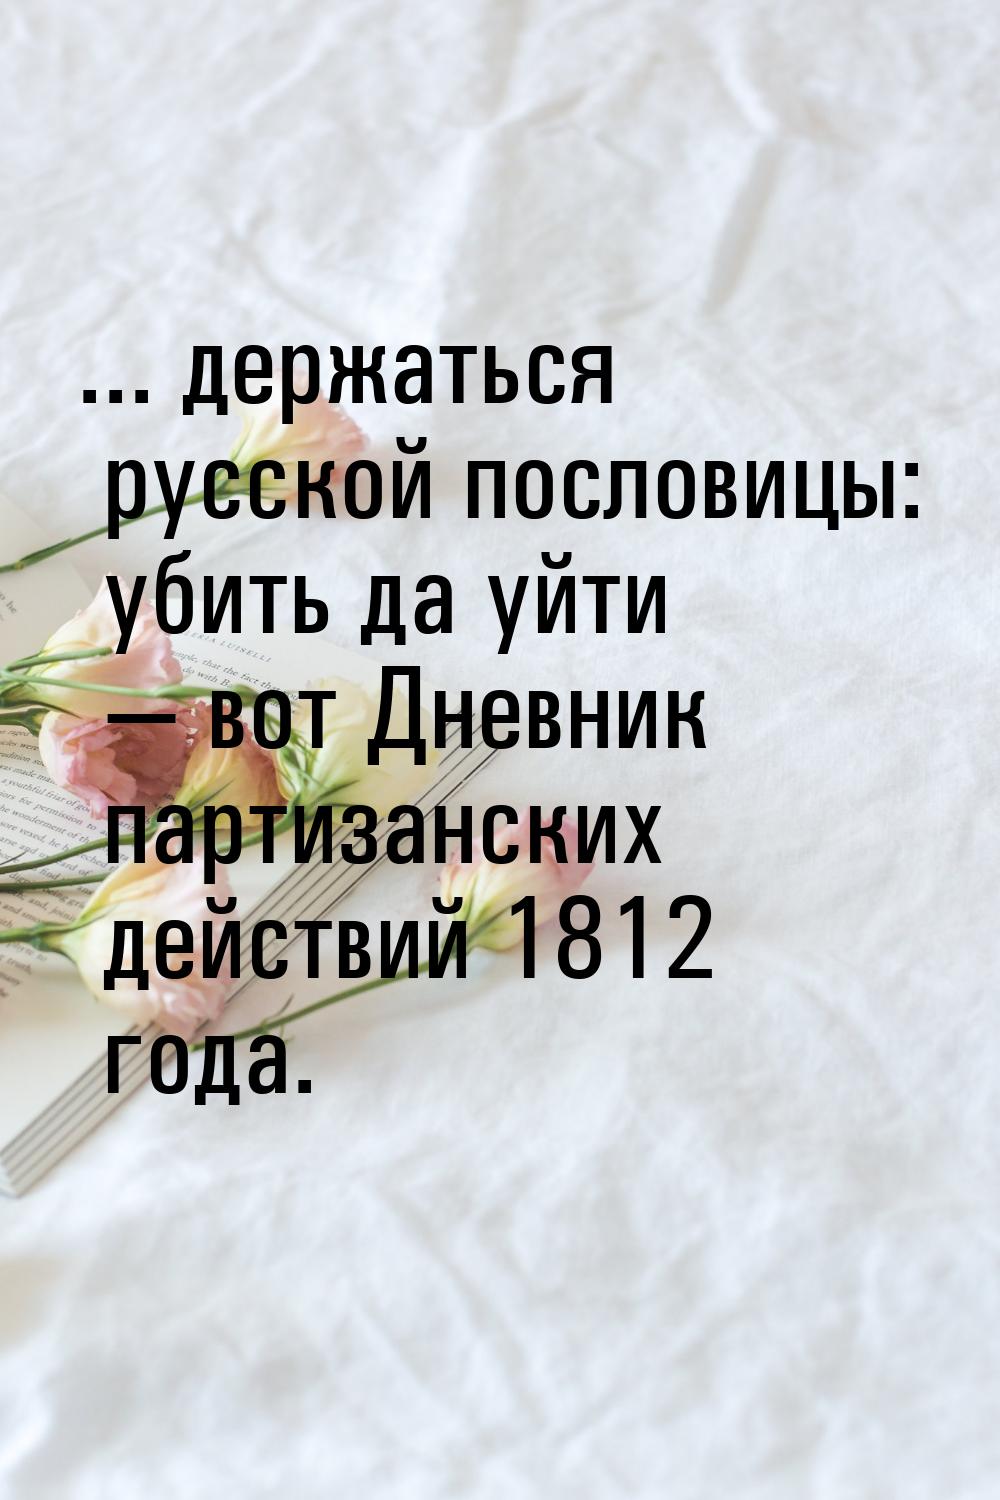 ... держаться русской пословицы: убить да уйти — вот Дневник партизанских действий 1812 го